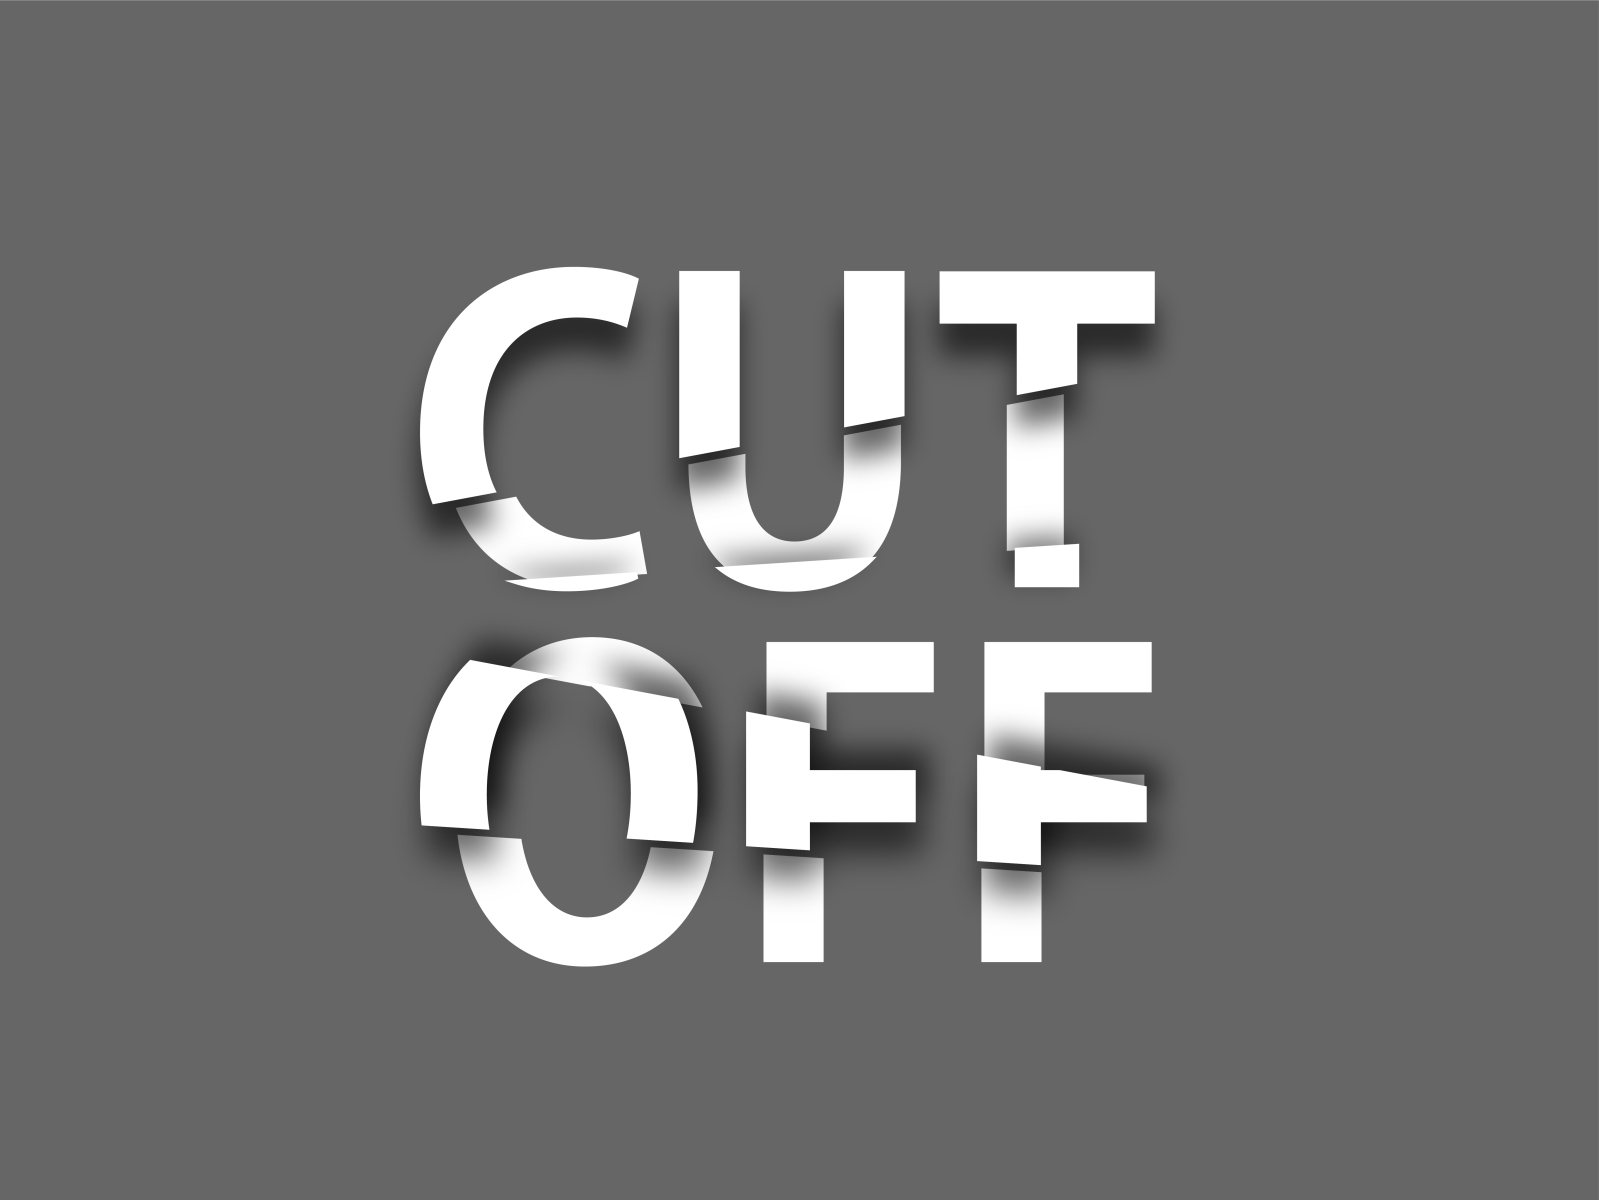 Cut Off